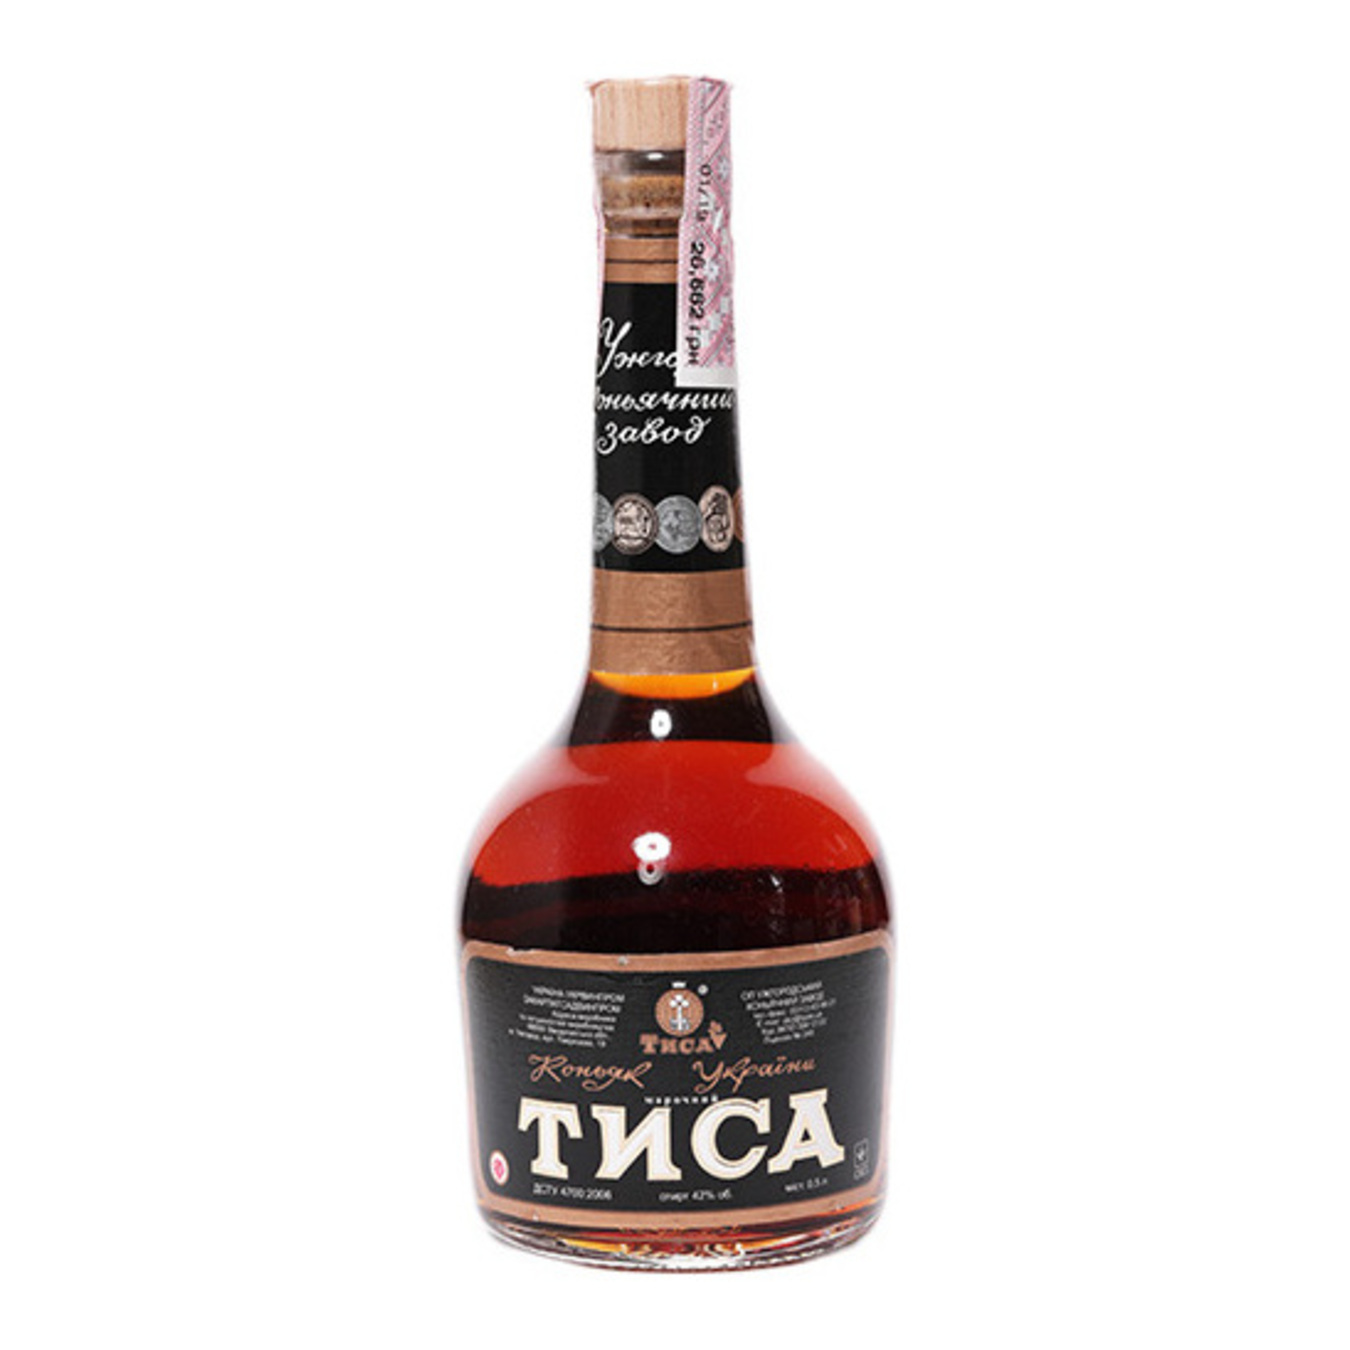 Tisa 6 yrs cognac 42% 0,5l